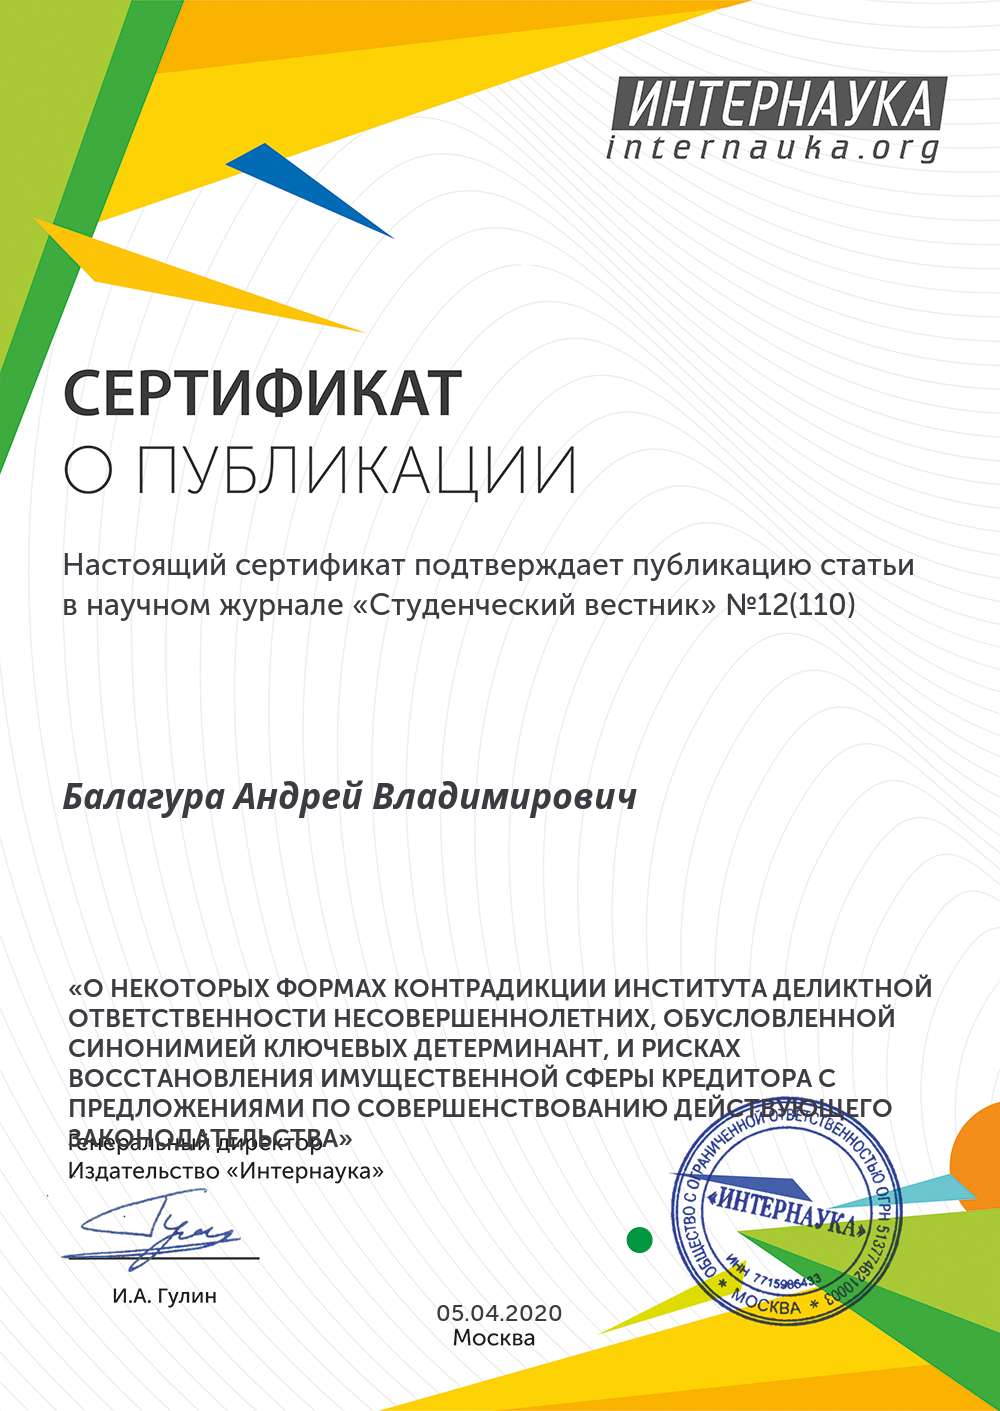 certificate-balagura-andrey-vladimirovich.jpg